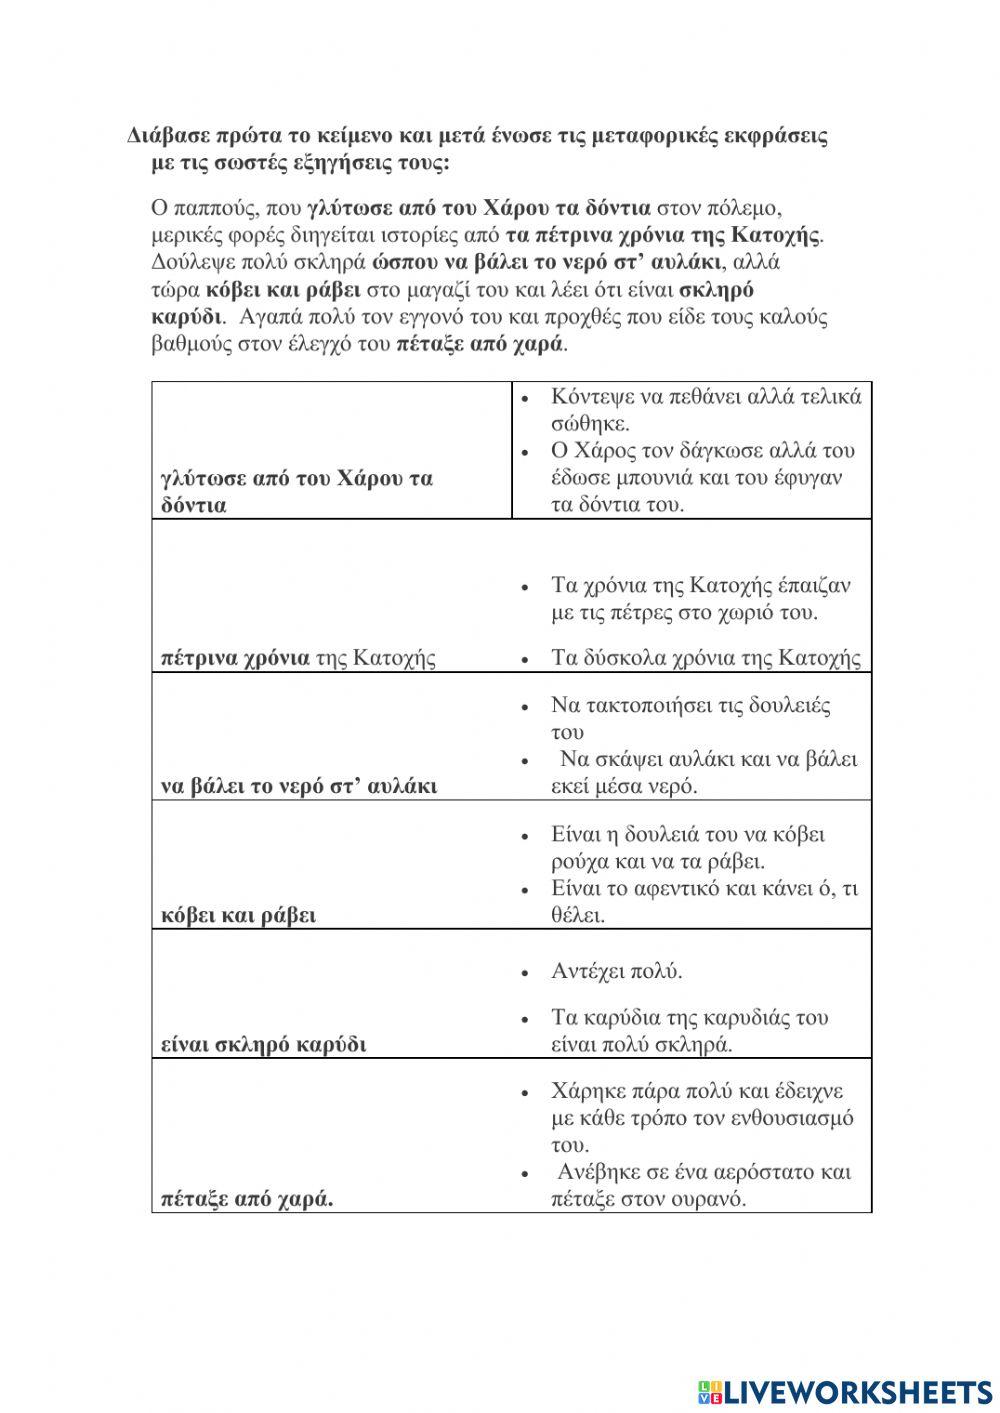 23. μεταφορικές εκφρασεις worksheet | Live Worksheets